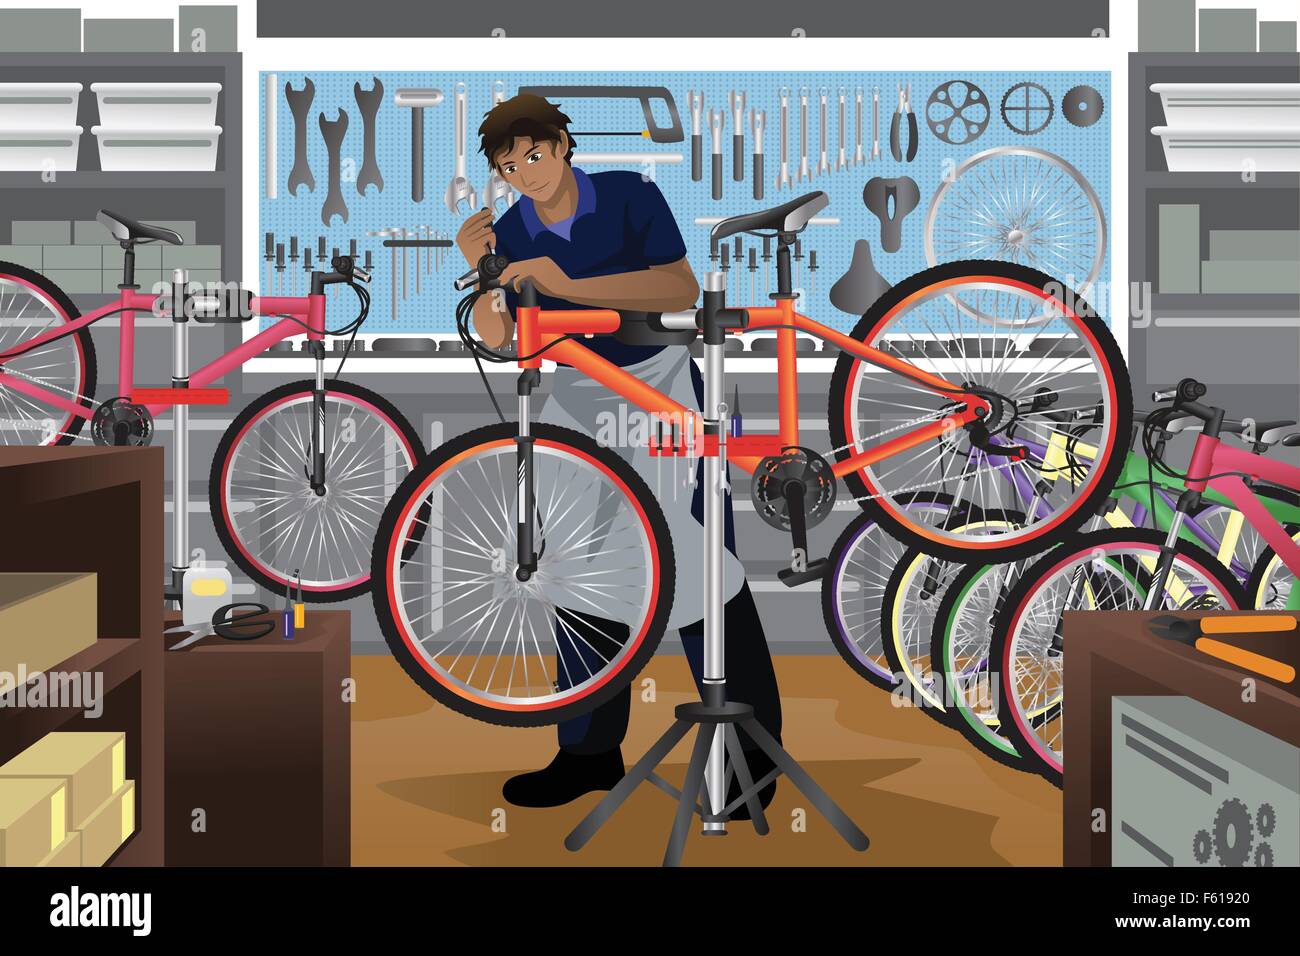 Un vecteur illustration de réparateur de vélo réparation d'une bicyclette dans son magasin Illustration de Vecteur